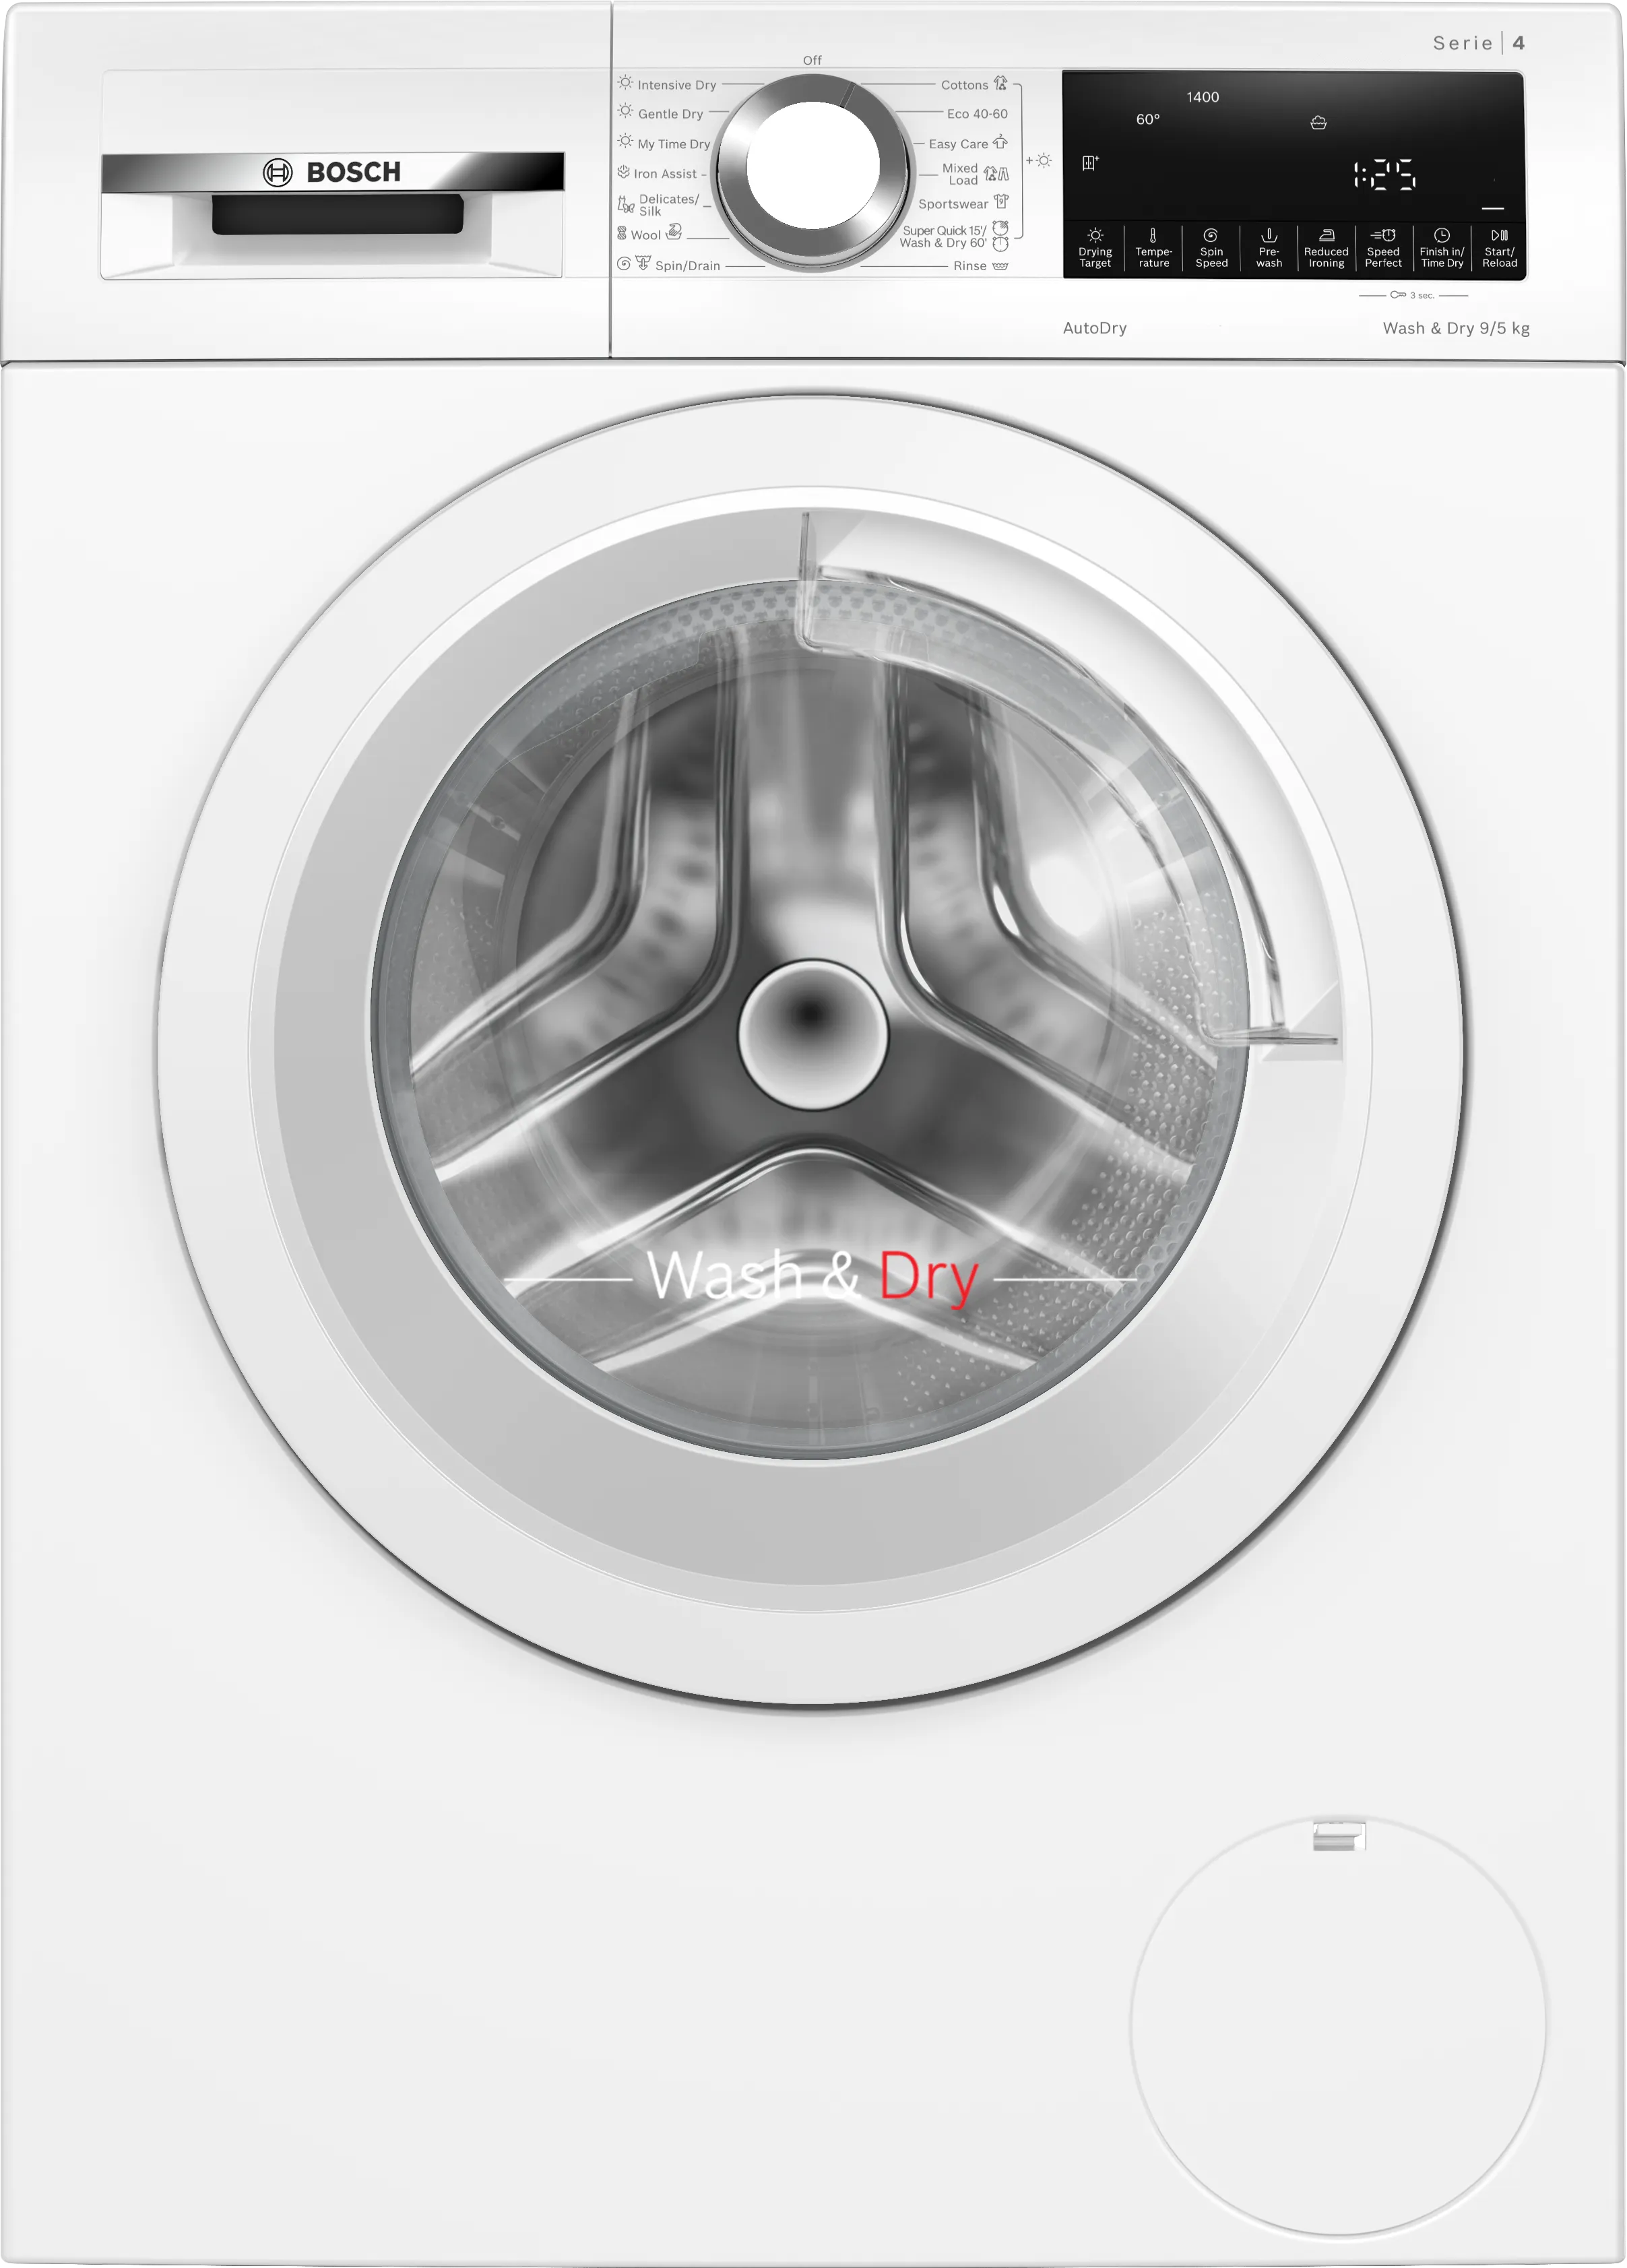 Series 4 Washer dryer 9/5 kg 1400 rpm 